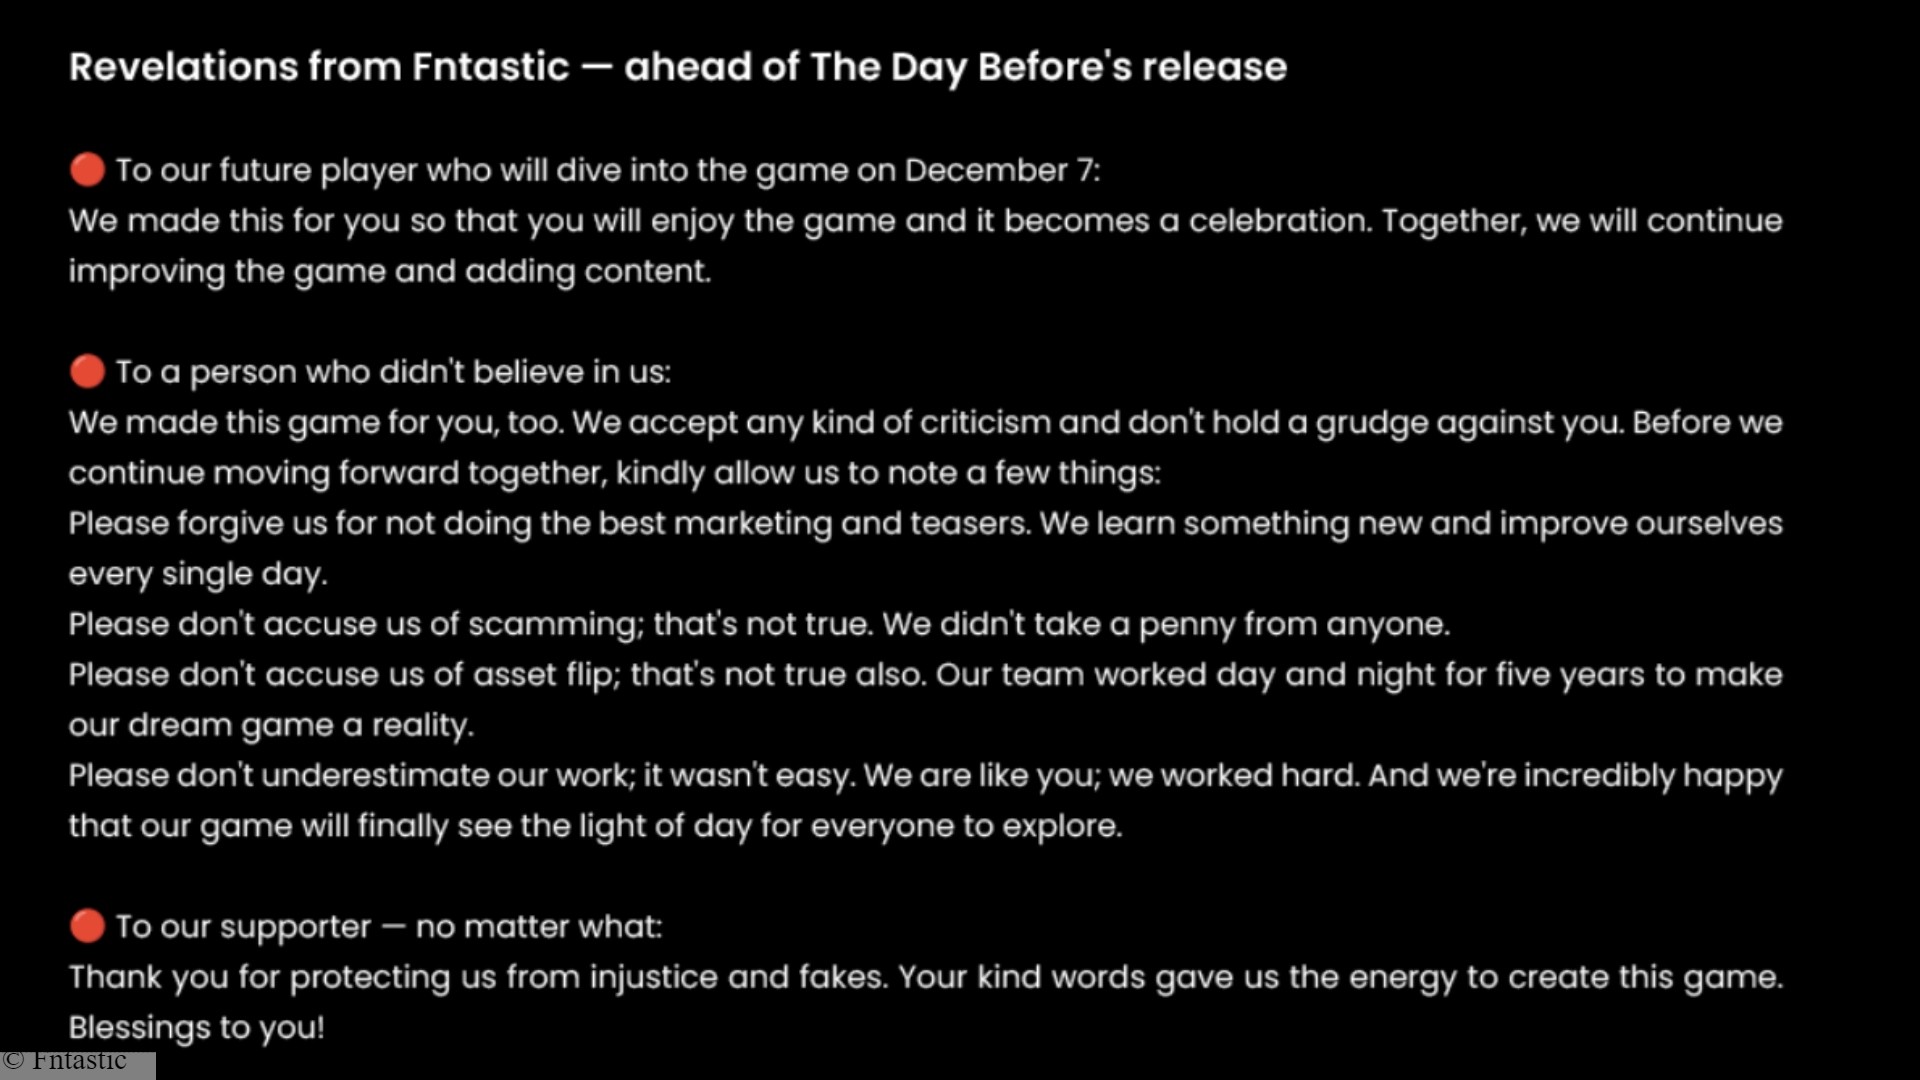 Déclaration sur la date de sortie de The Day Before : Une déclaration du développeur de The Day Before, Fntastic, concernant le nouveau jeu de survie